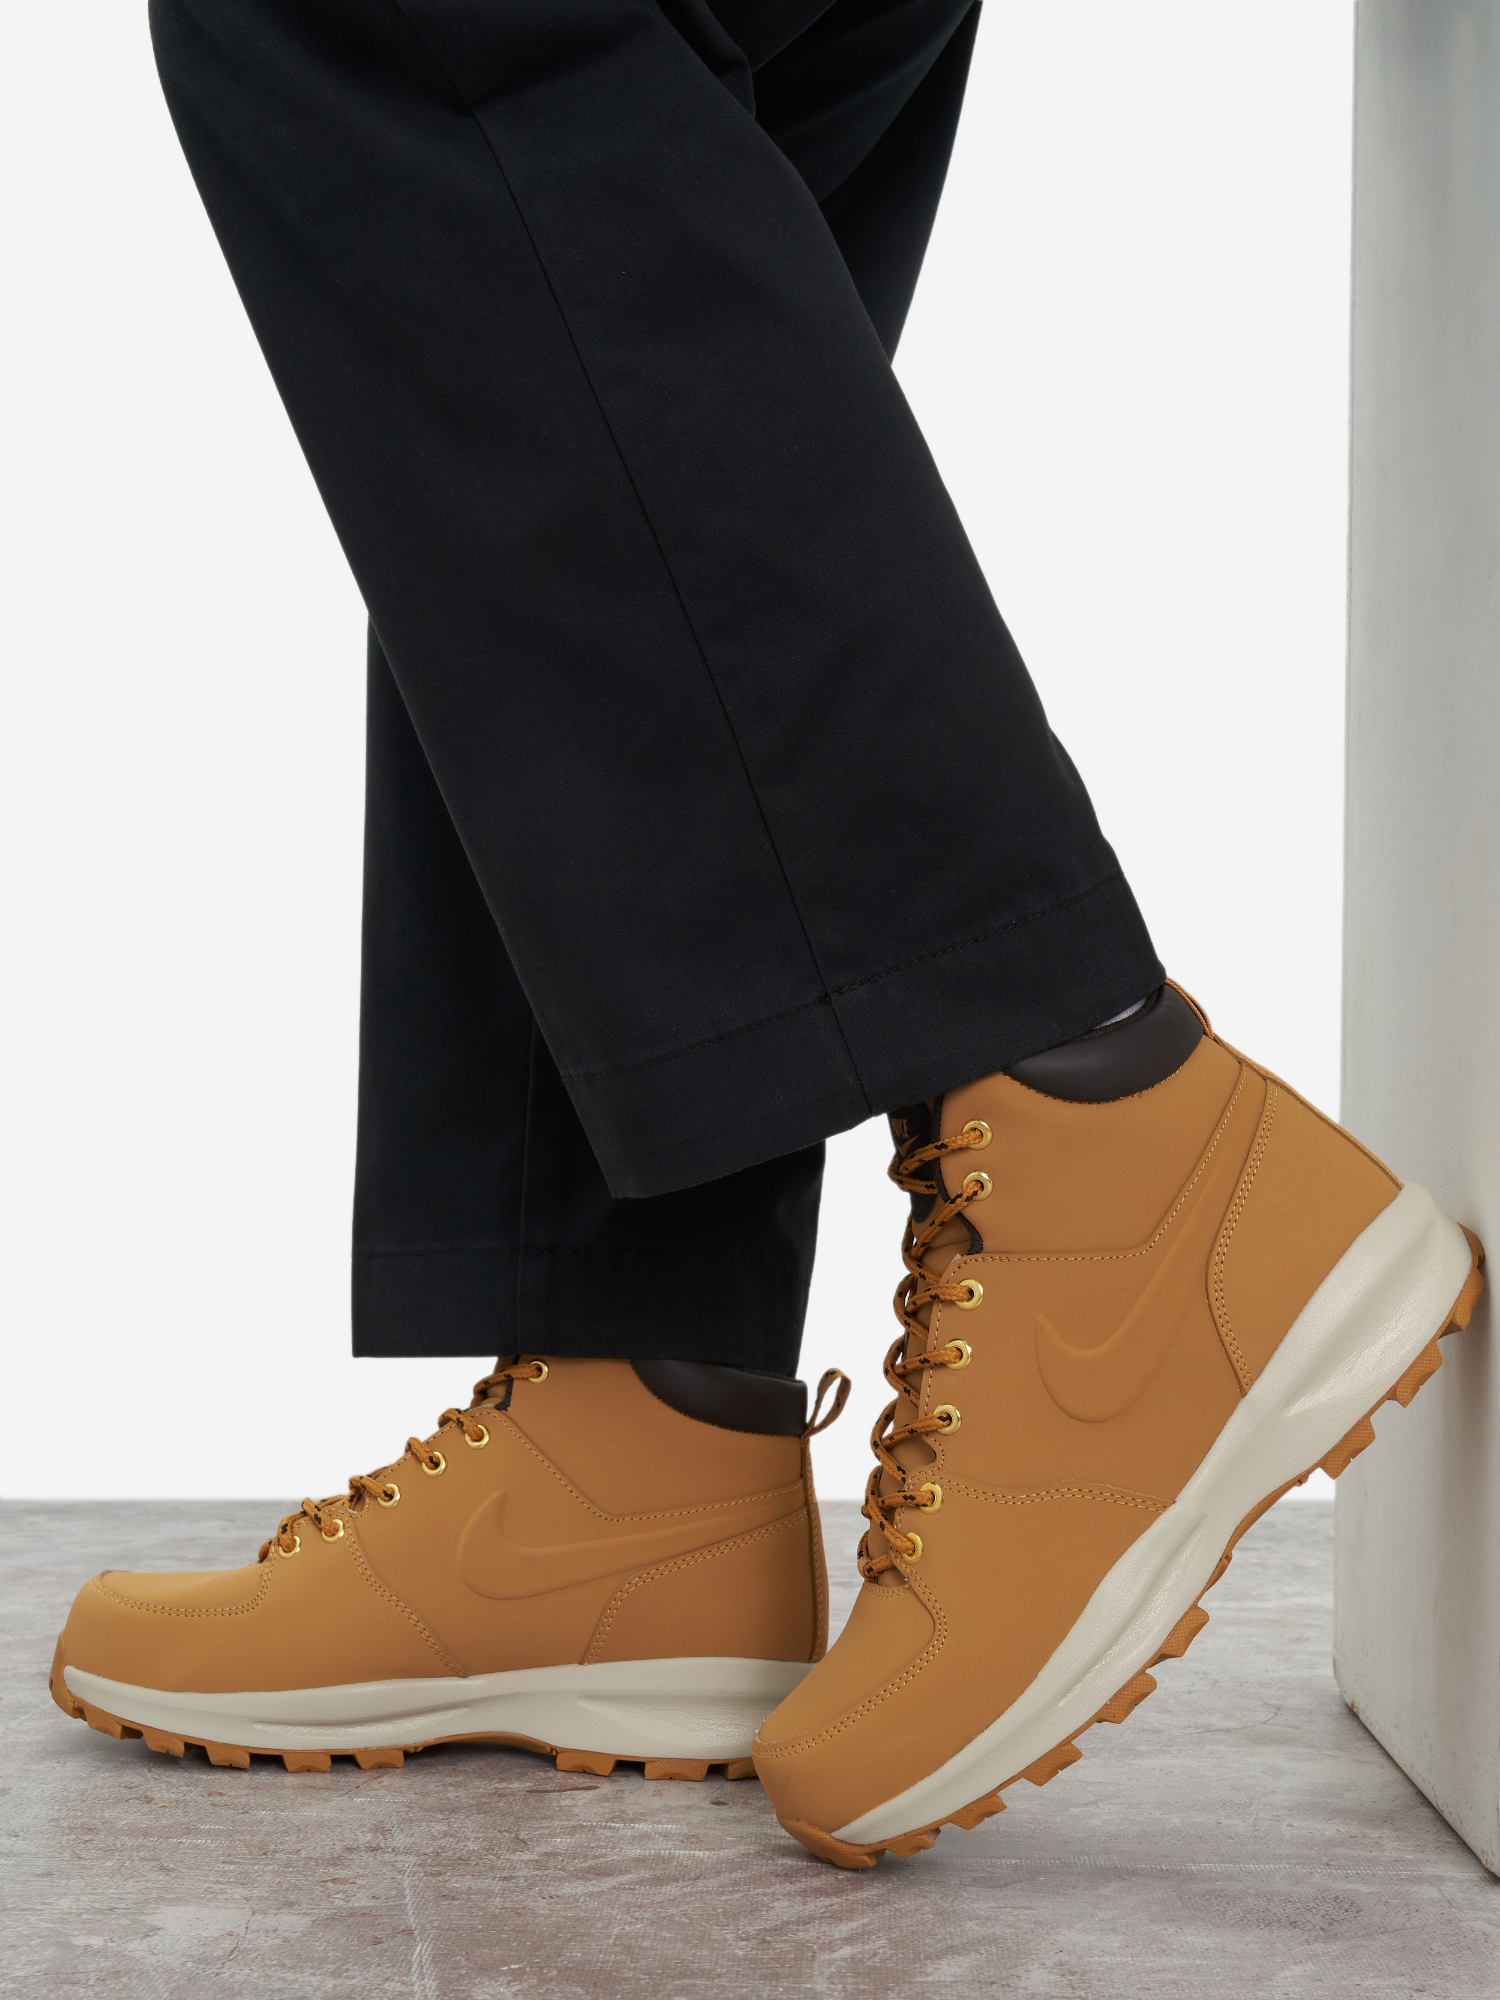 Ботинки мужские Nike Manoa Leather, Желтый